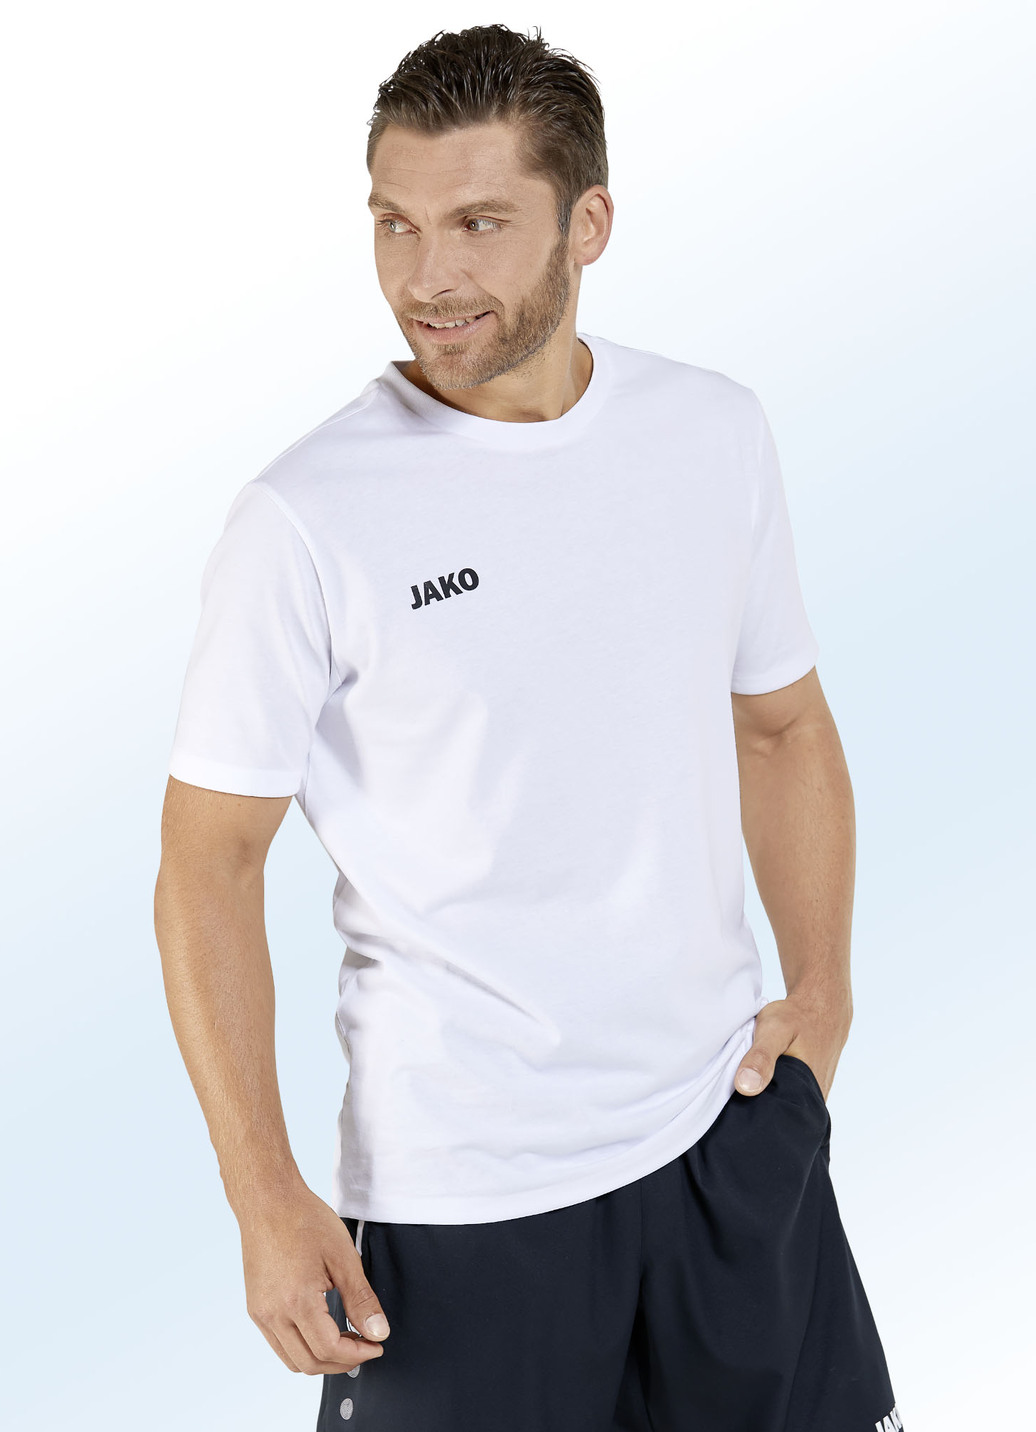 Doppelpack Shirt von "Jako" in 6 Farben, Größe L (50), Weiss-Weiss von Jako